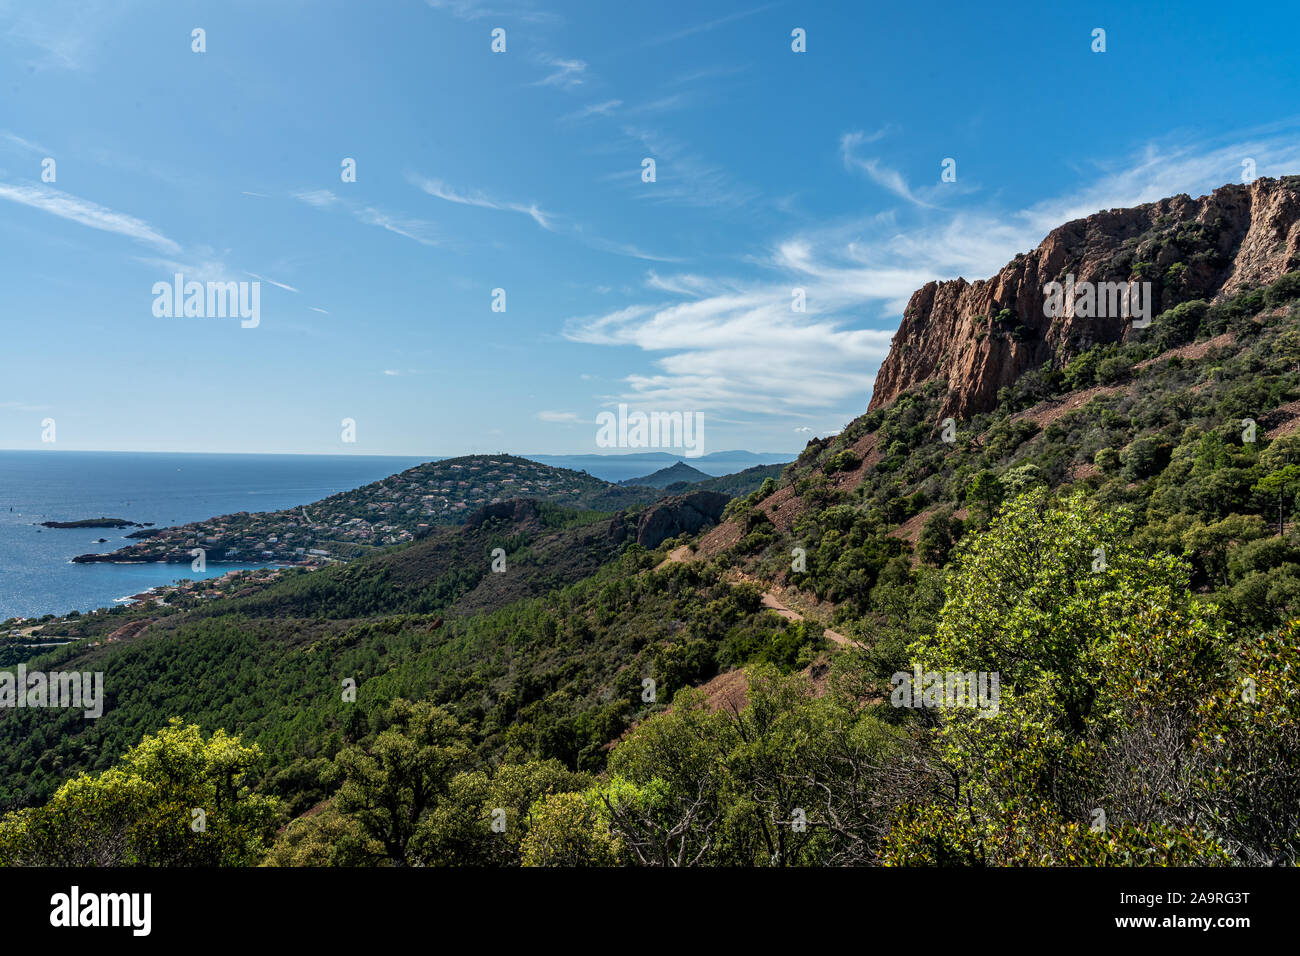 Cap roux sentiero escursionistico in rocce rosse delle montagne Esterel con il blu del mare del Mediterraneo Foto Stock